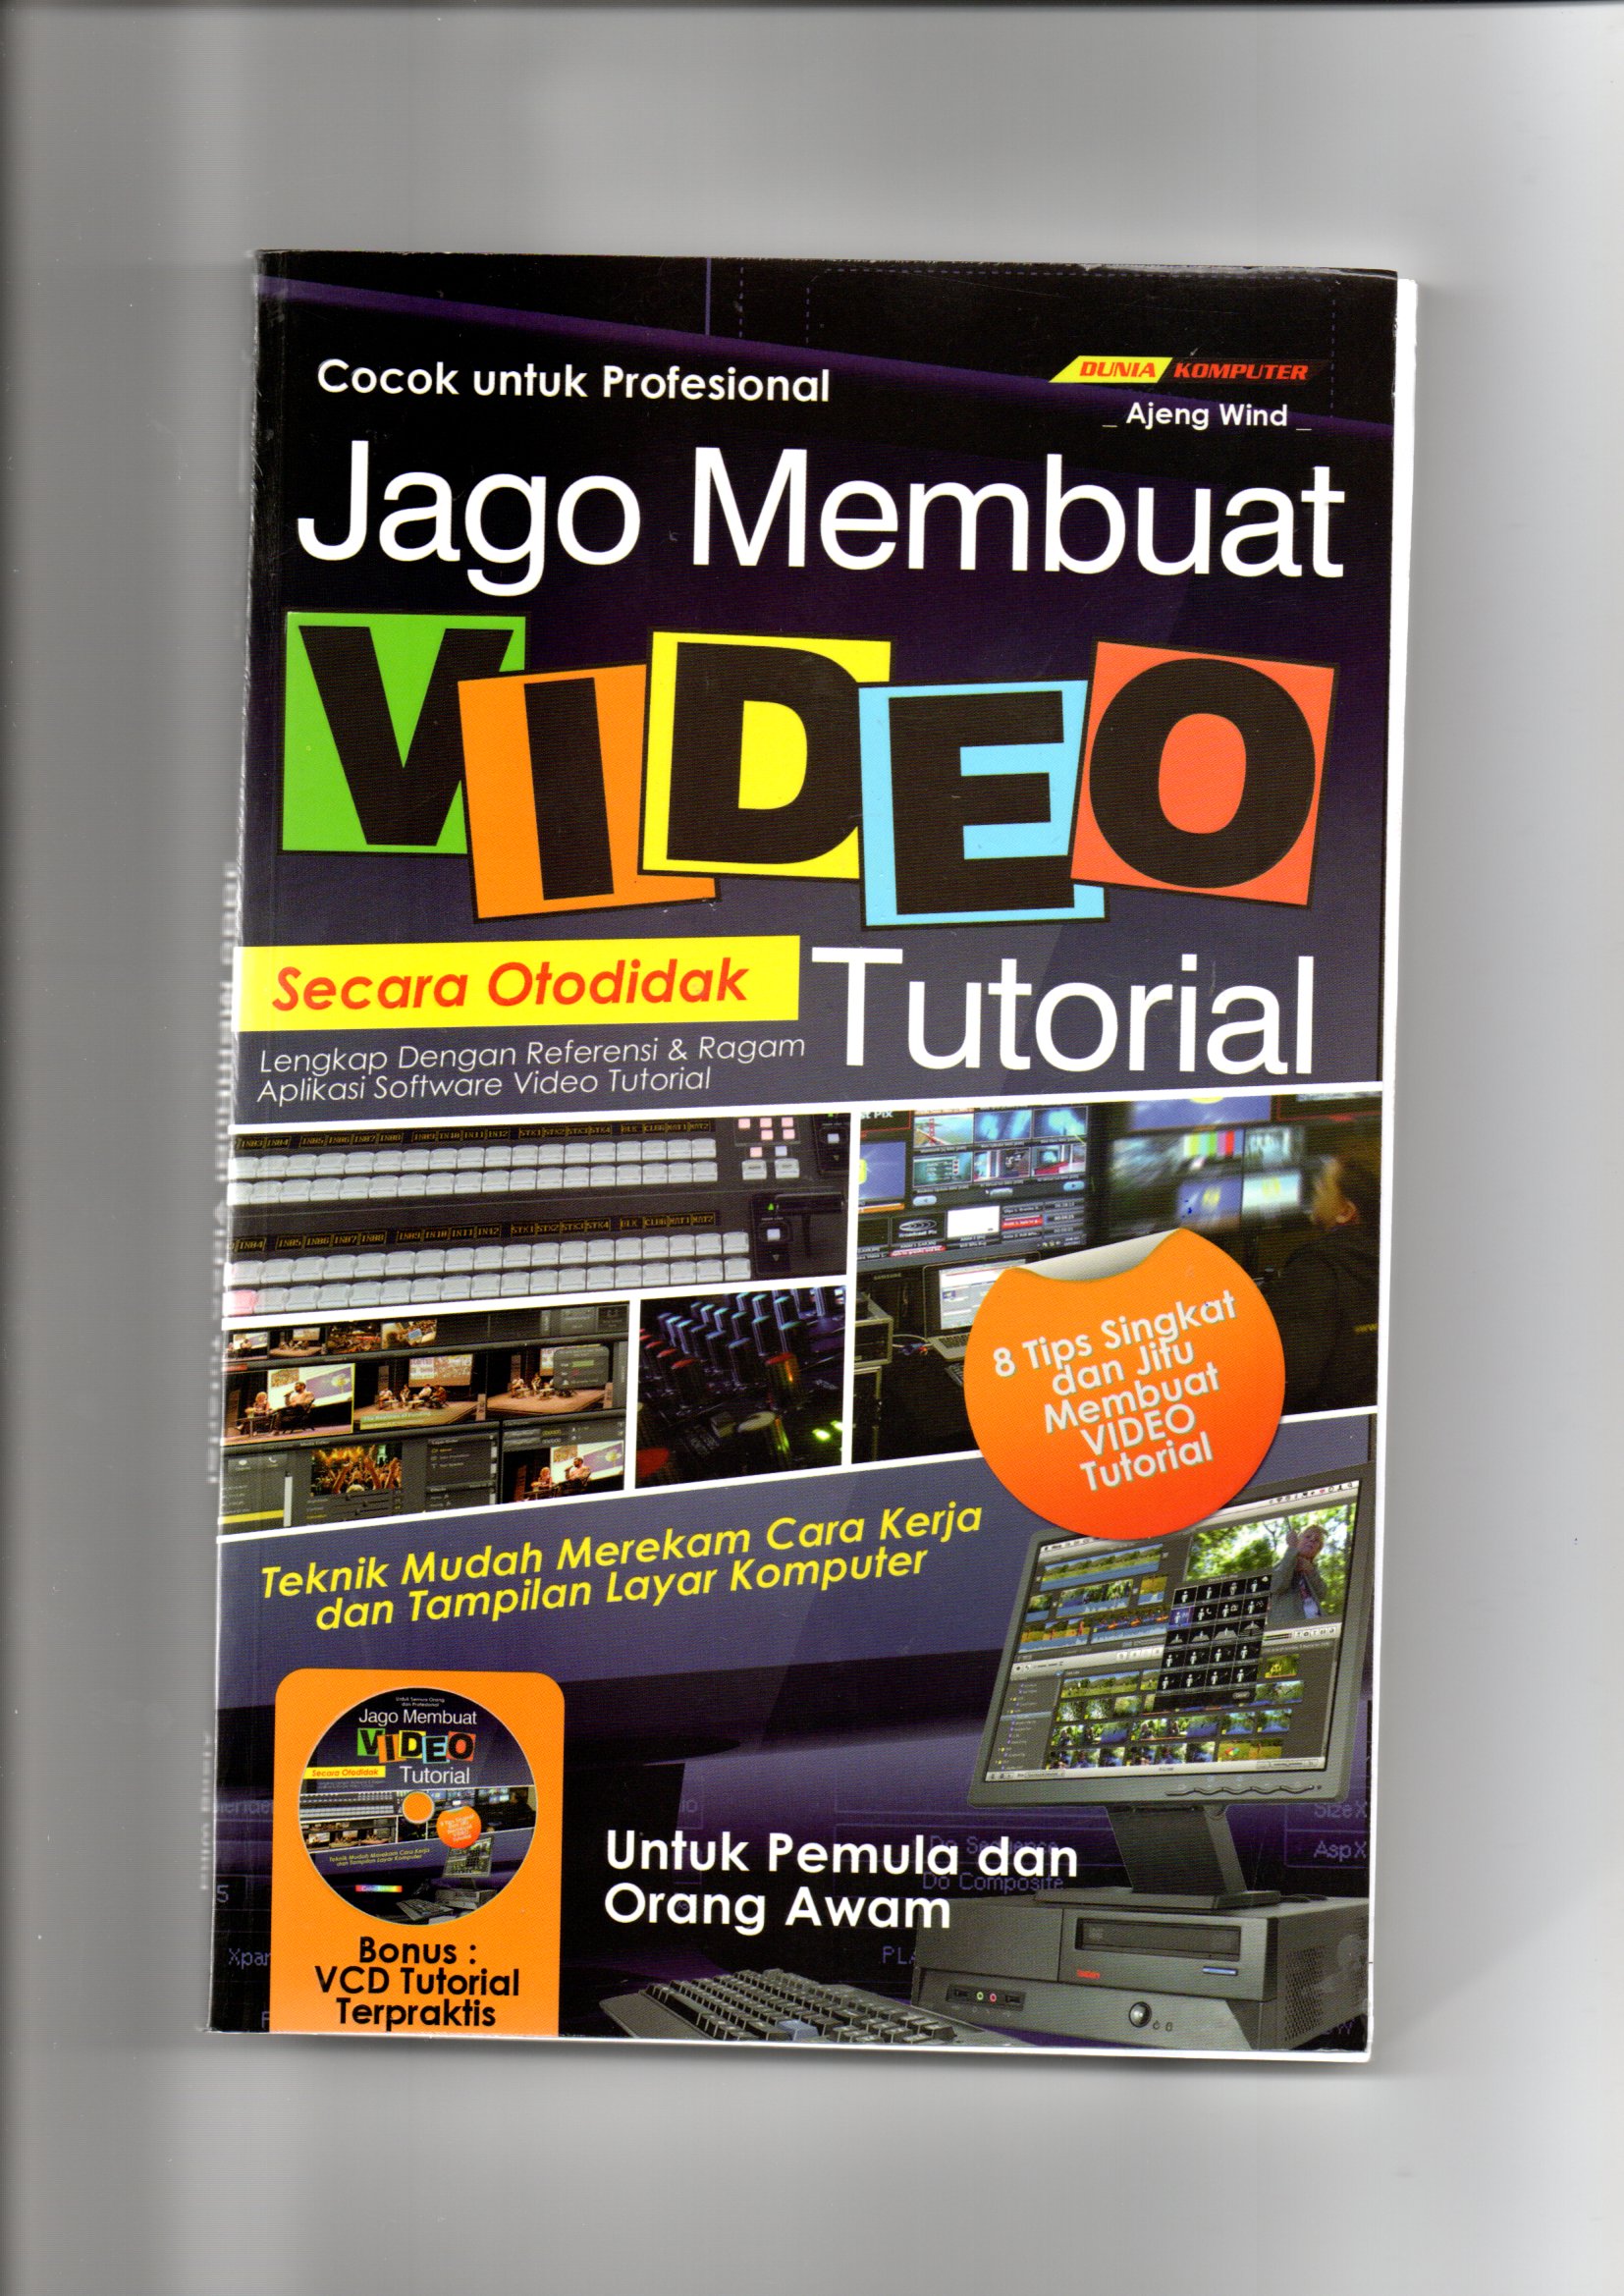 Jago membuat video tutorial